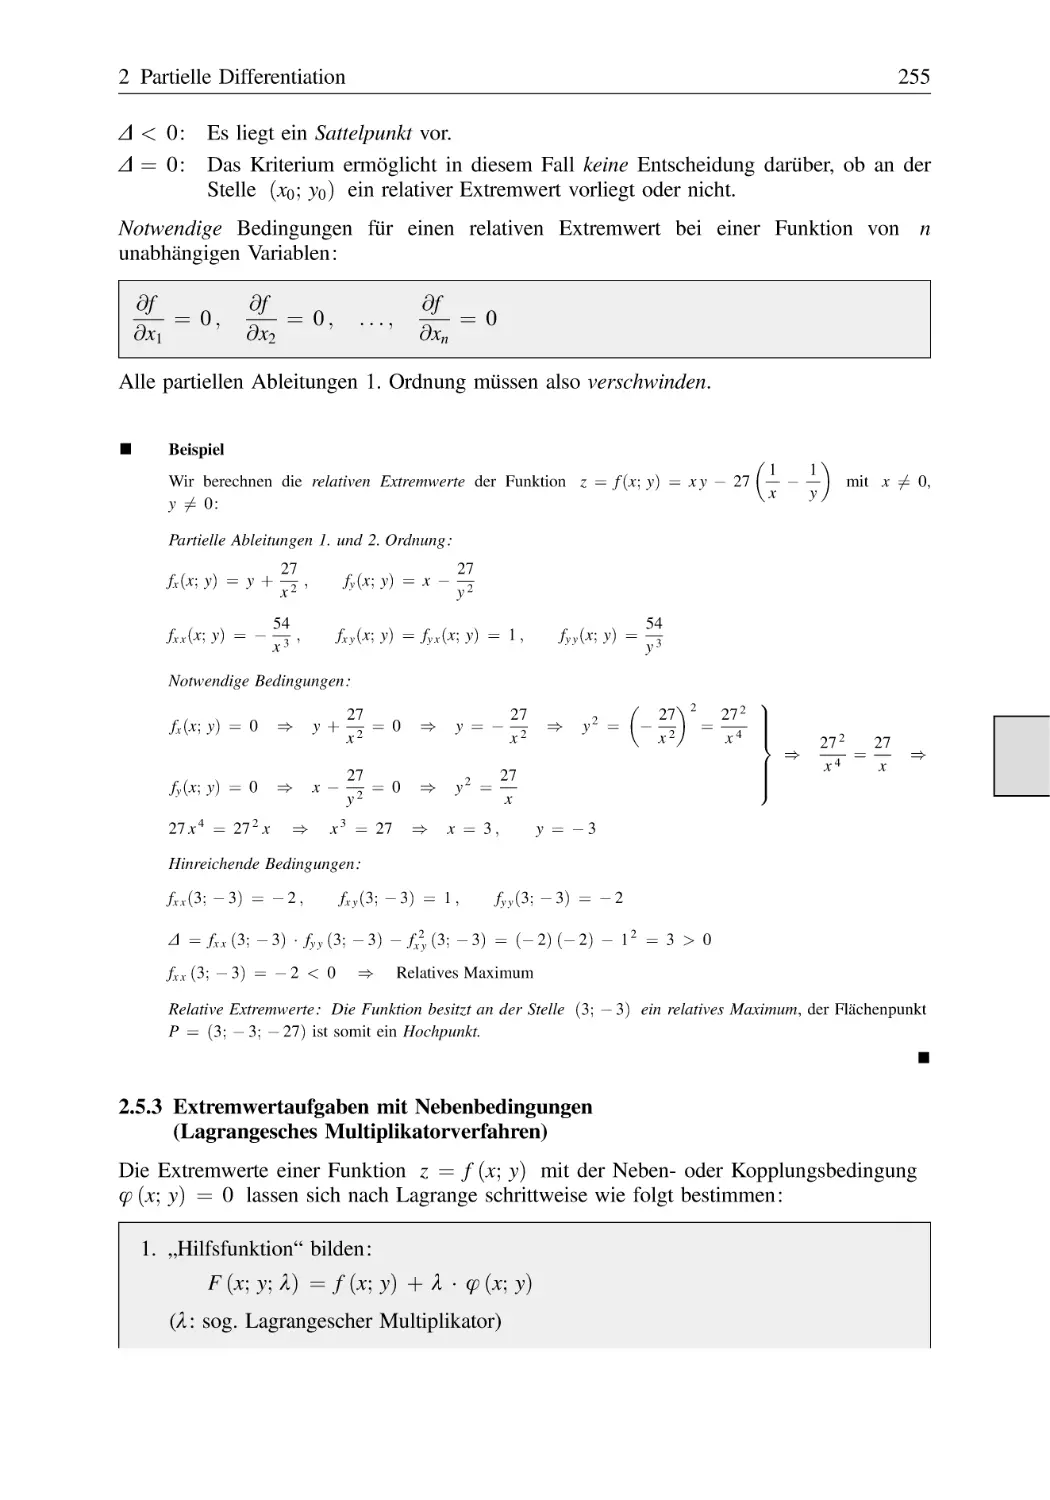 2.5.3 Extremwertaufgaben mit Nebenbedingungen (Lagrangesches Multiplikatorverfahren)